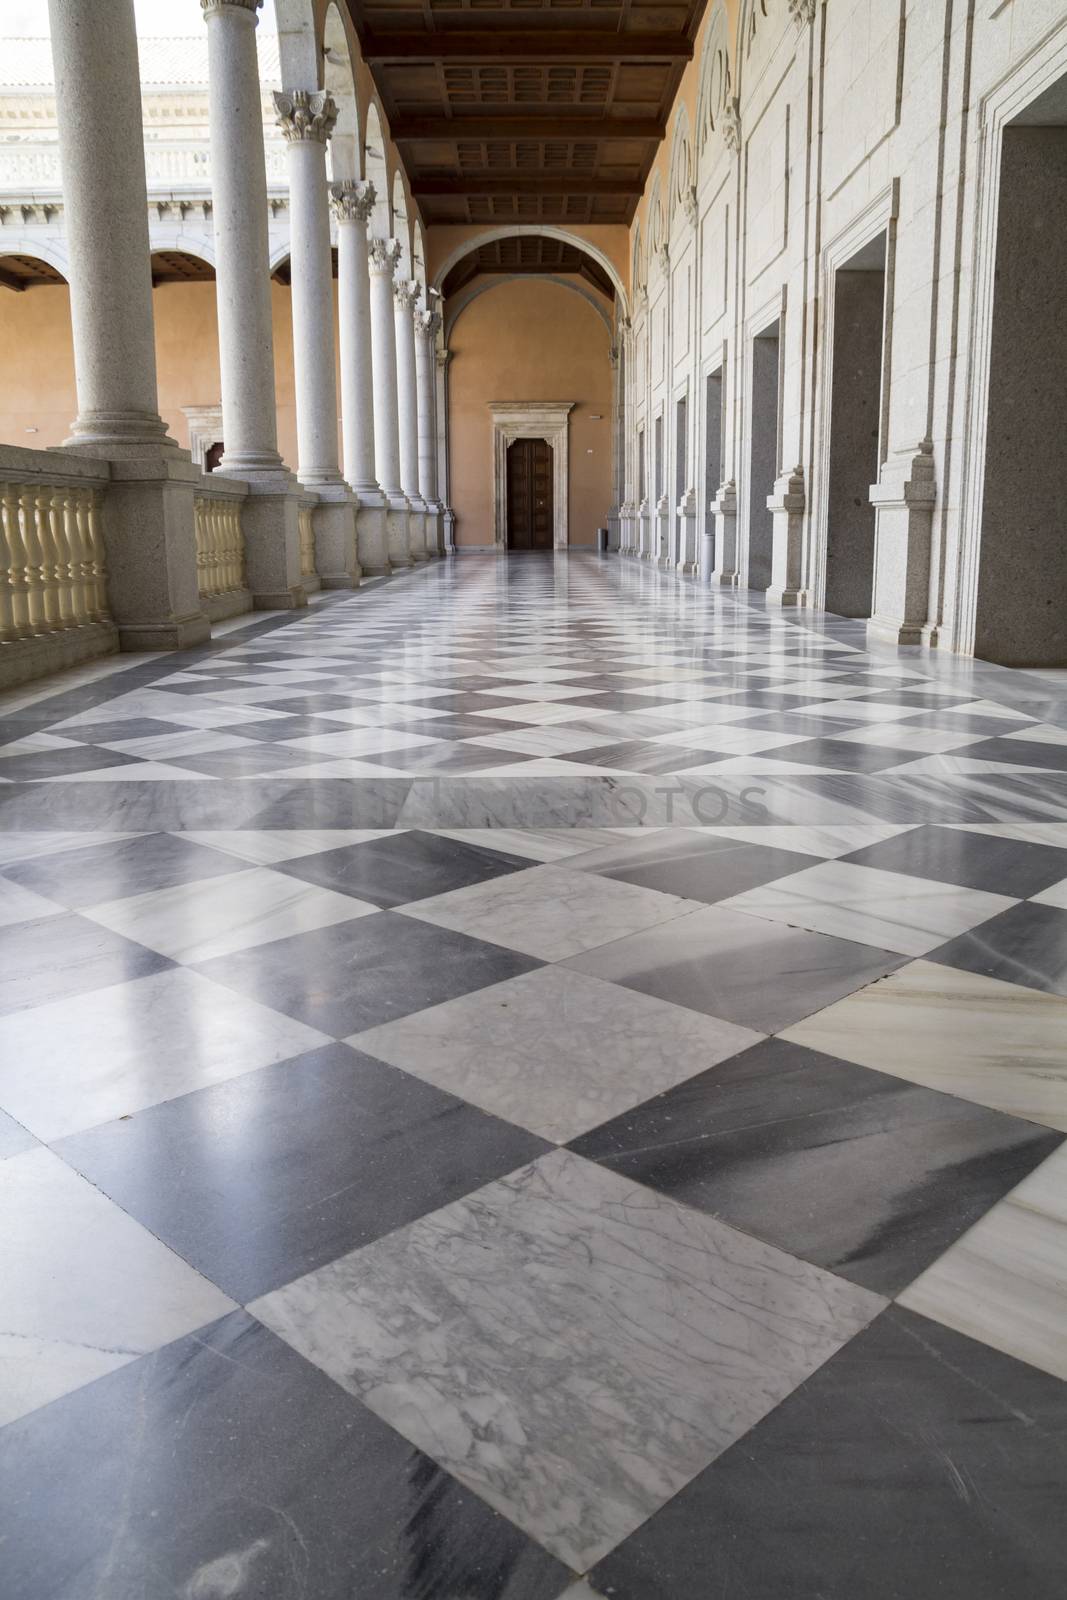 Marble floor, Indoor palace, Alcazar de Toledo, Spain by FernandoCortes